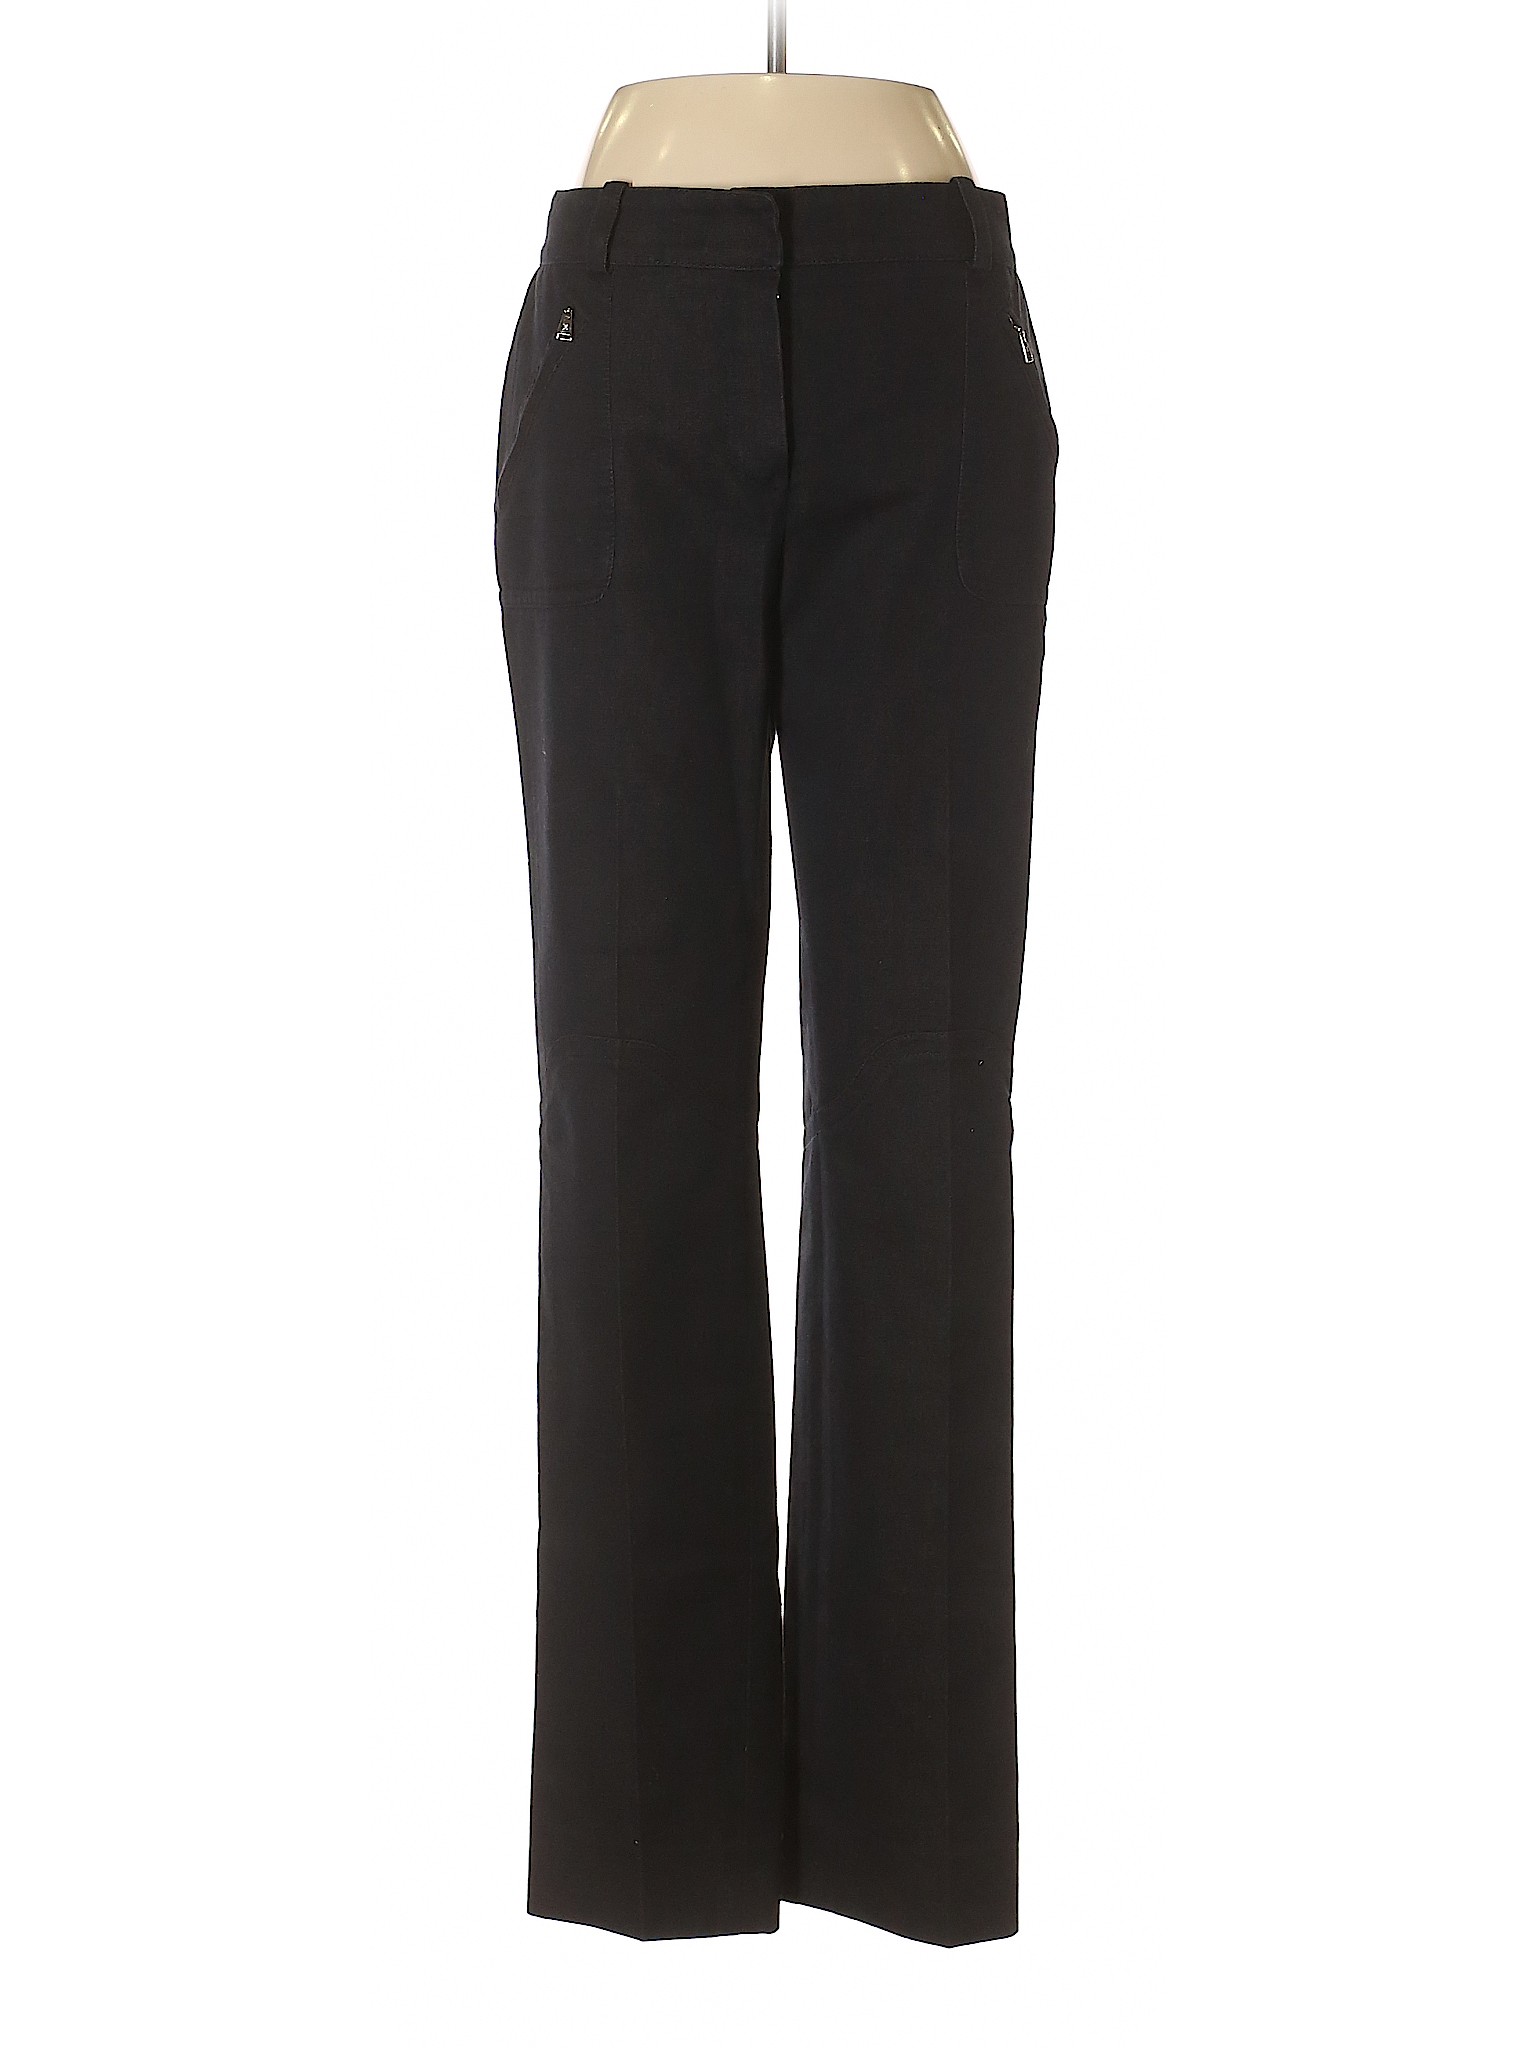 Louis Vuitton Women Black Jeans 40 french | eBay